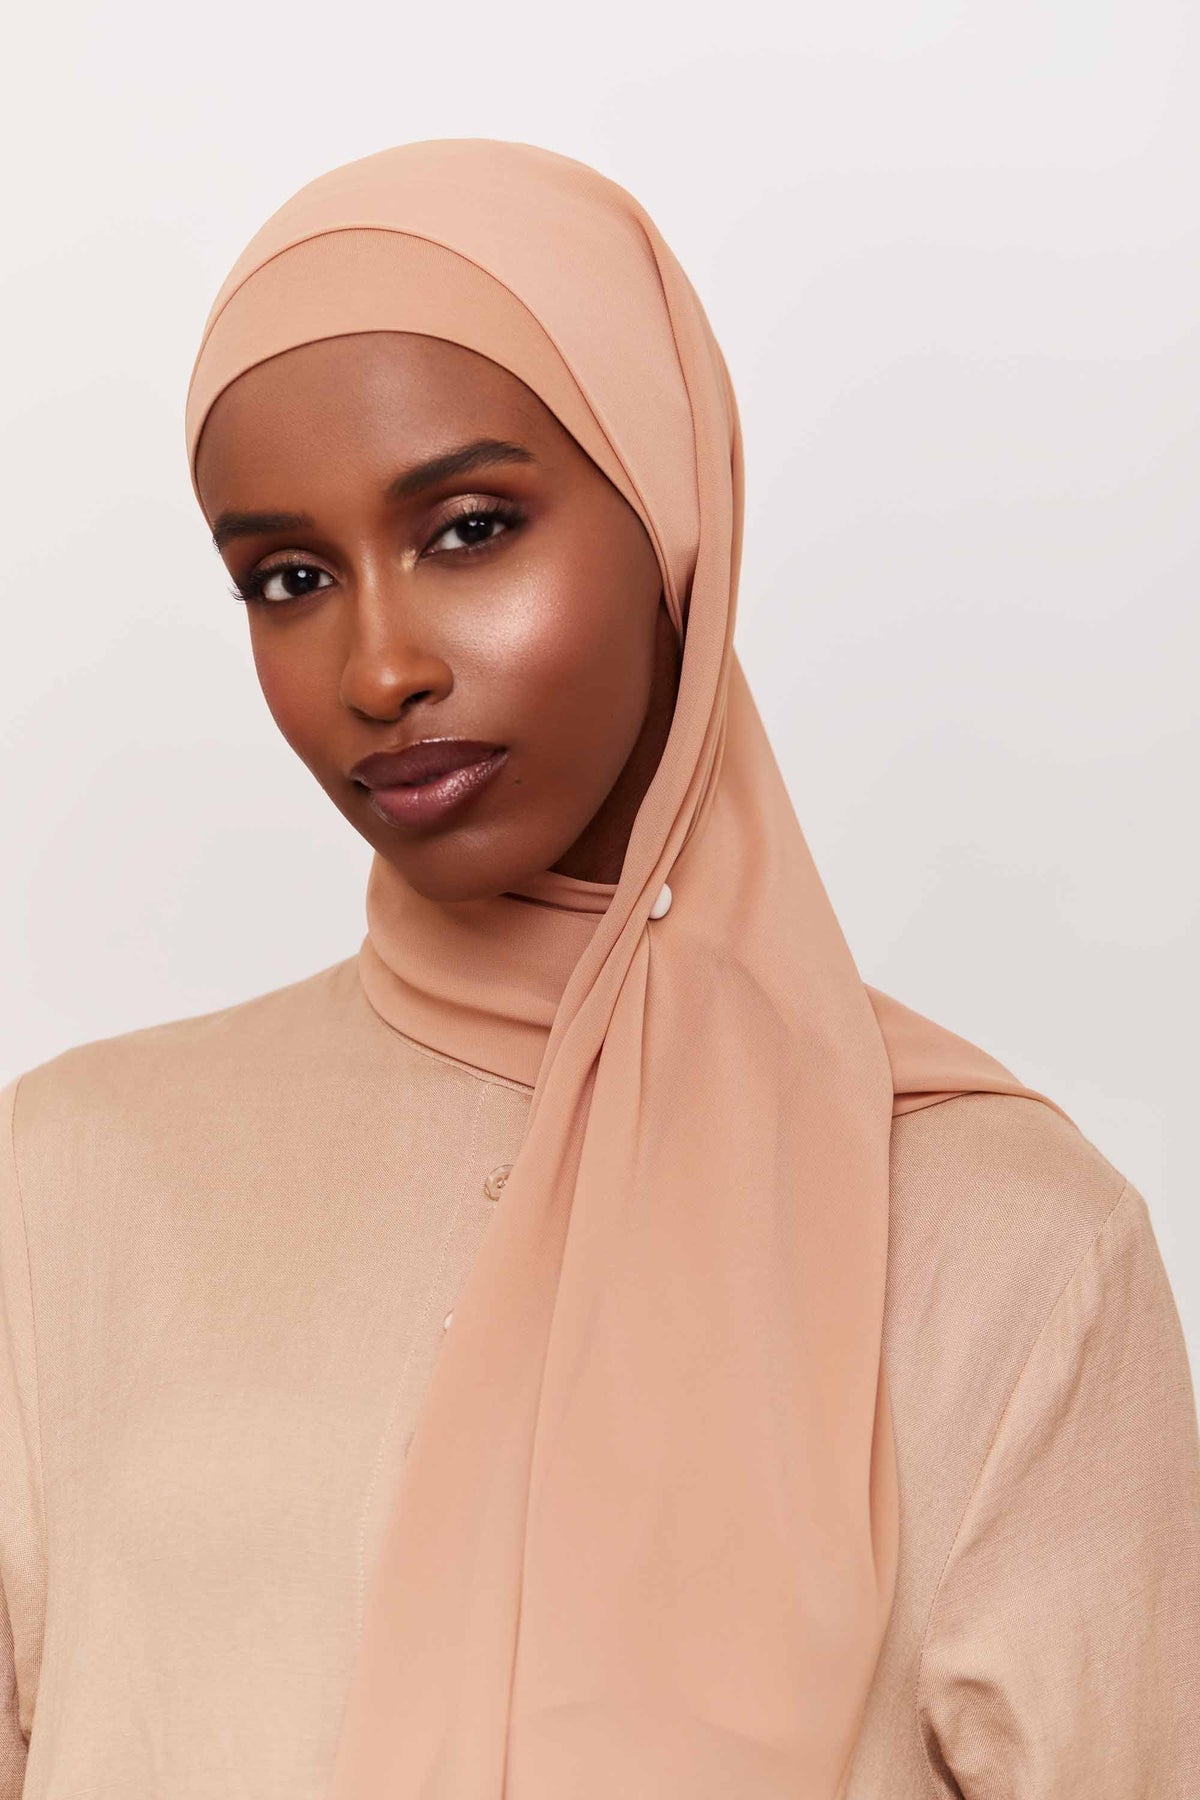 Chiffon LITE Hijab - Cafe Au Lait Accessories epschoolboard 